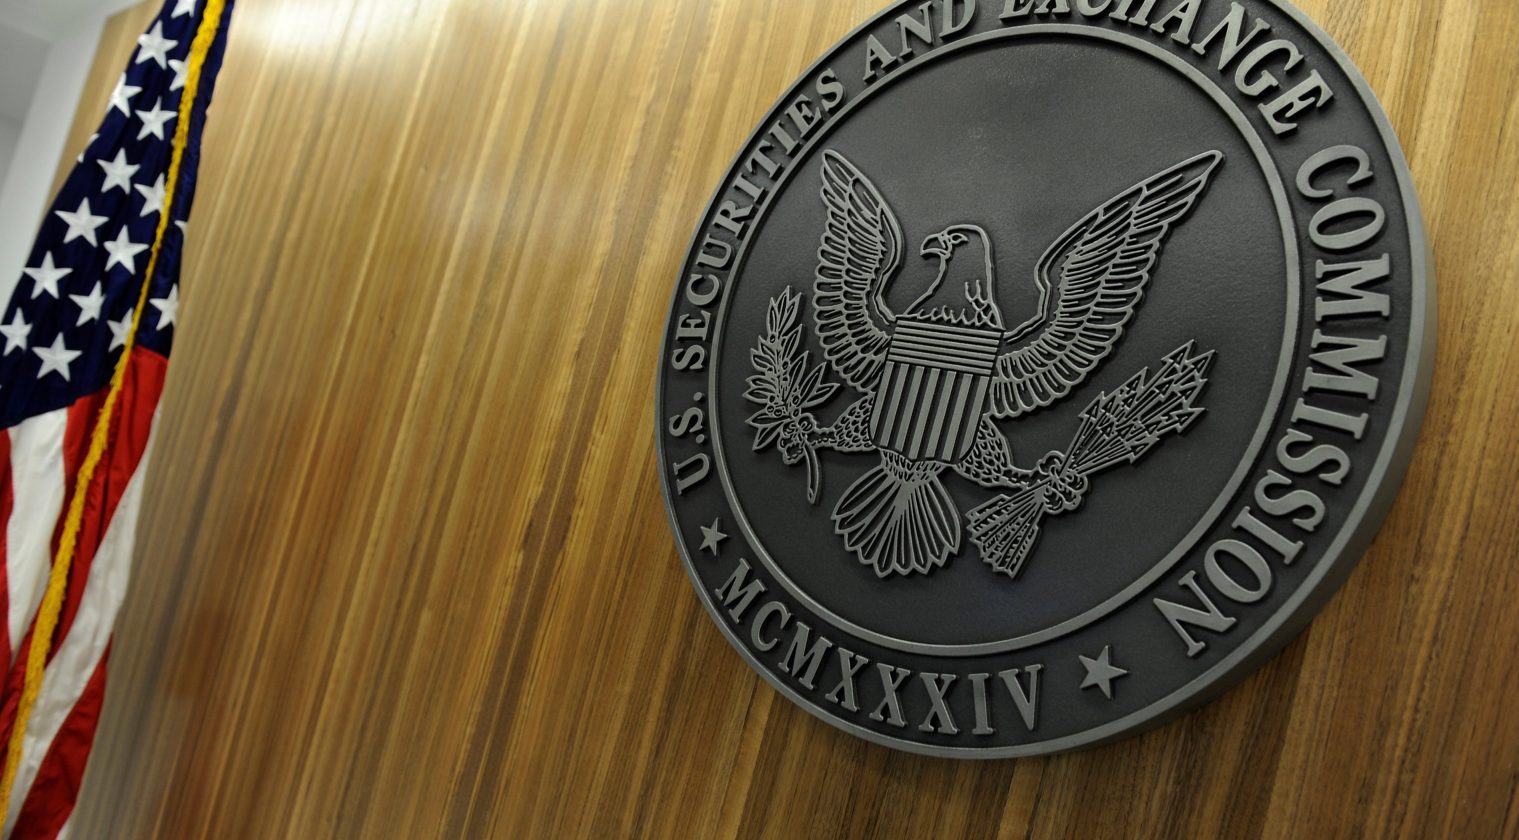 SEC, merkezi olmayan borsaları hedef alıyor - Kripto Para Haber